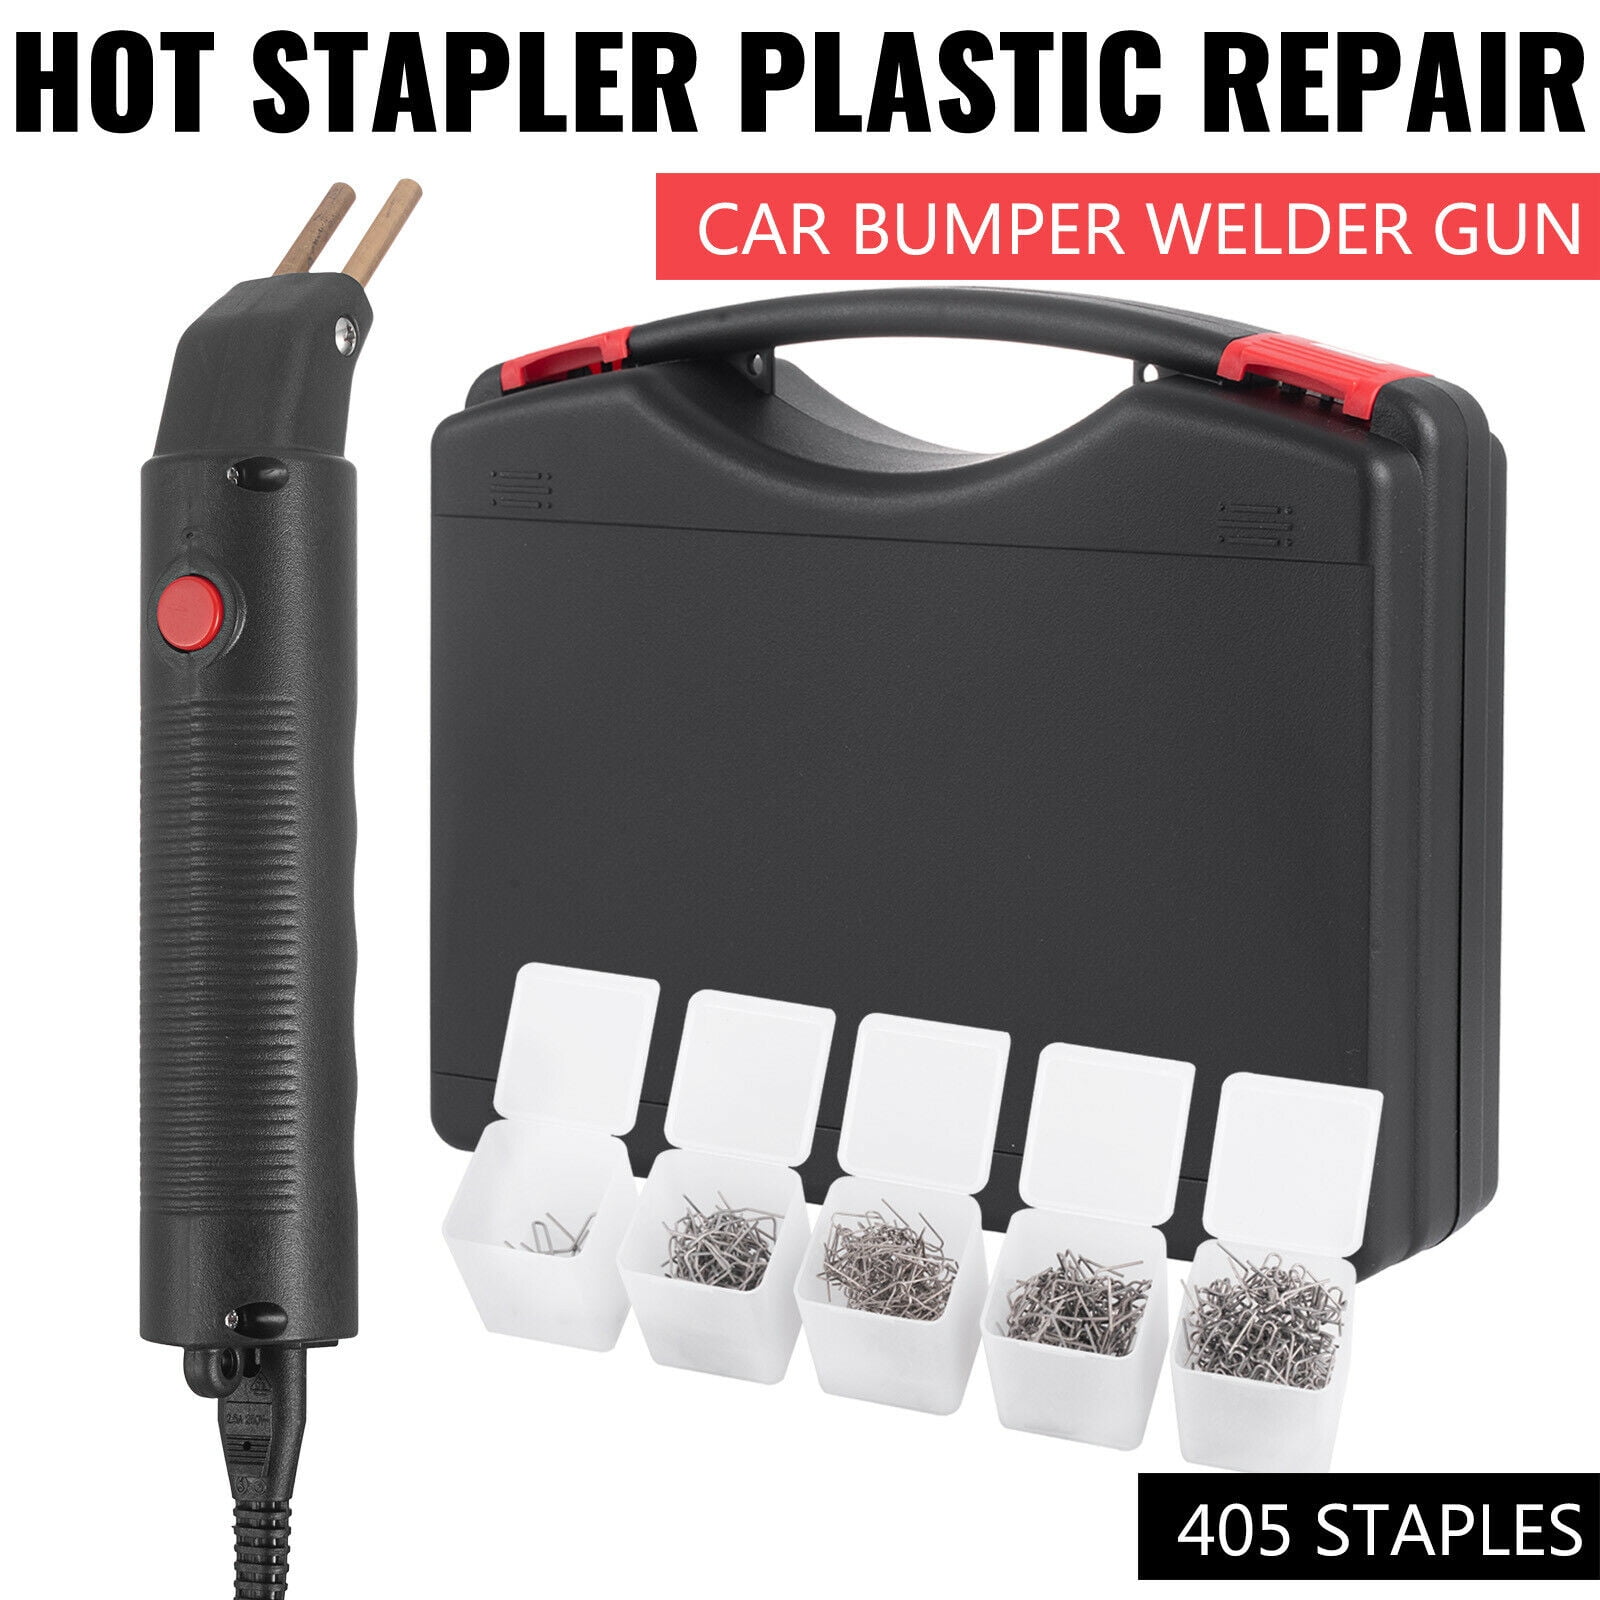 100x 0.8mm Staples Hot Stapler Bumper Fender Weld Gun Plastic Repair Tool Useful